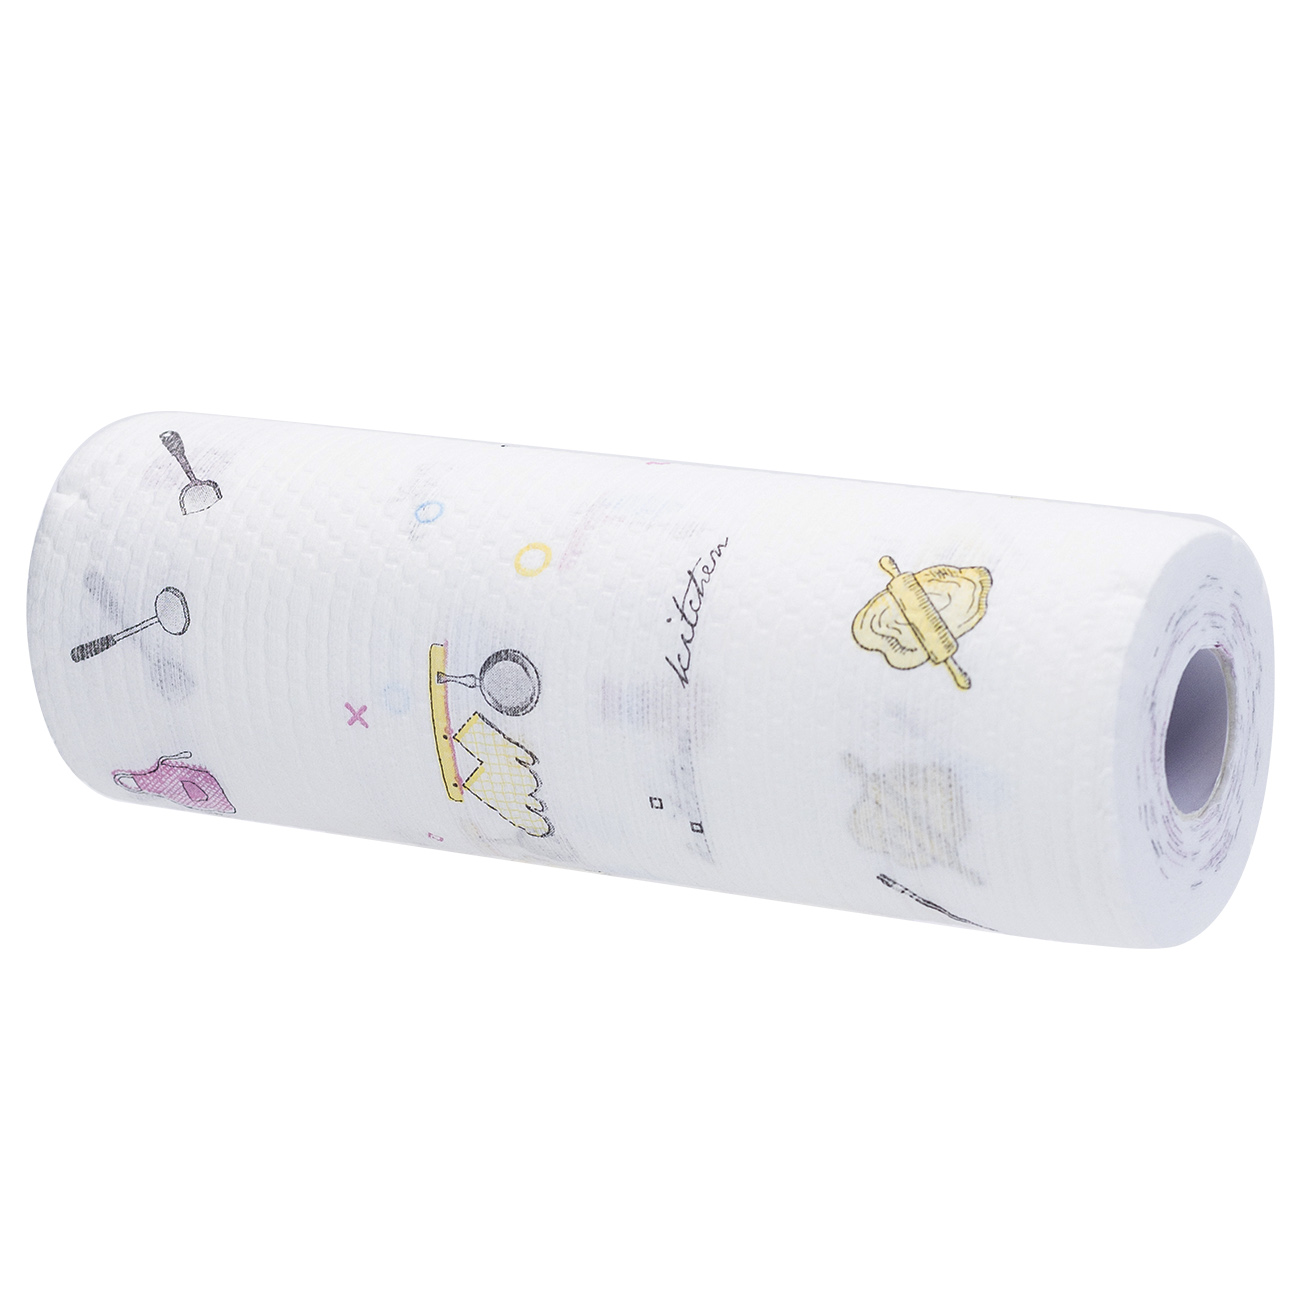 Roll towels, 25x25 cm, 50 pcs, white printed, Roll изображение № 2